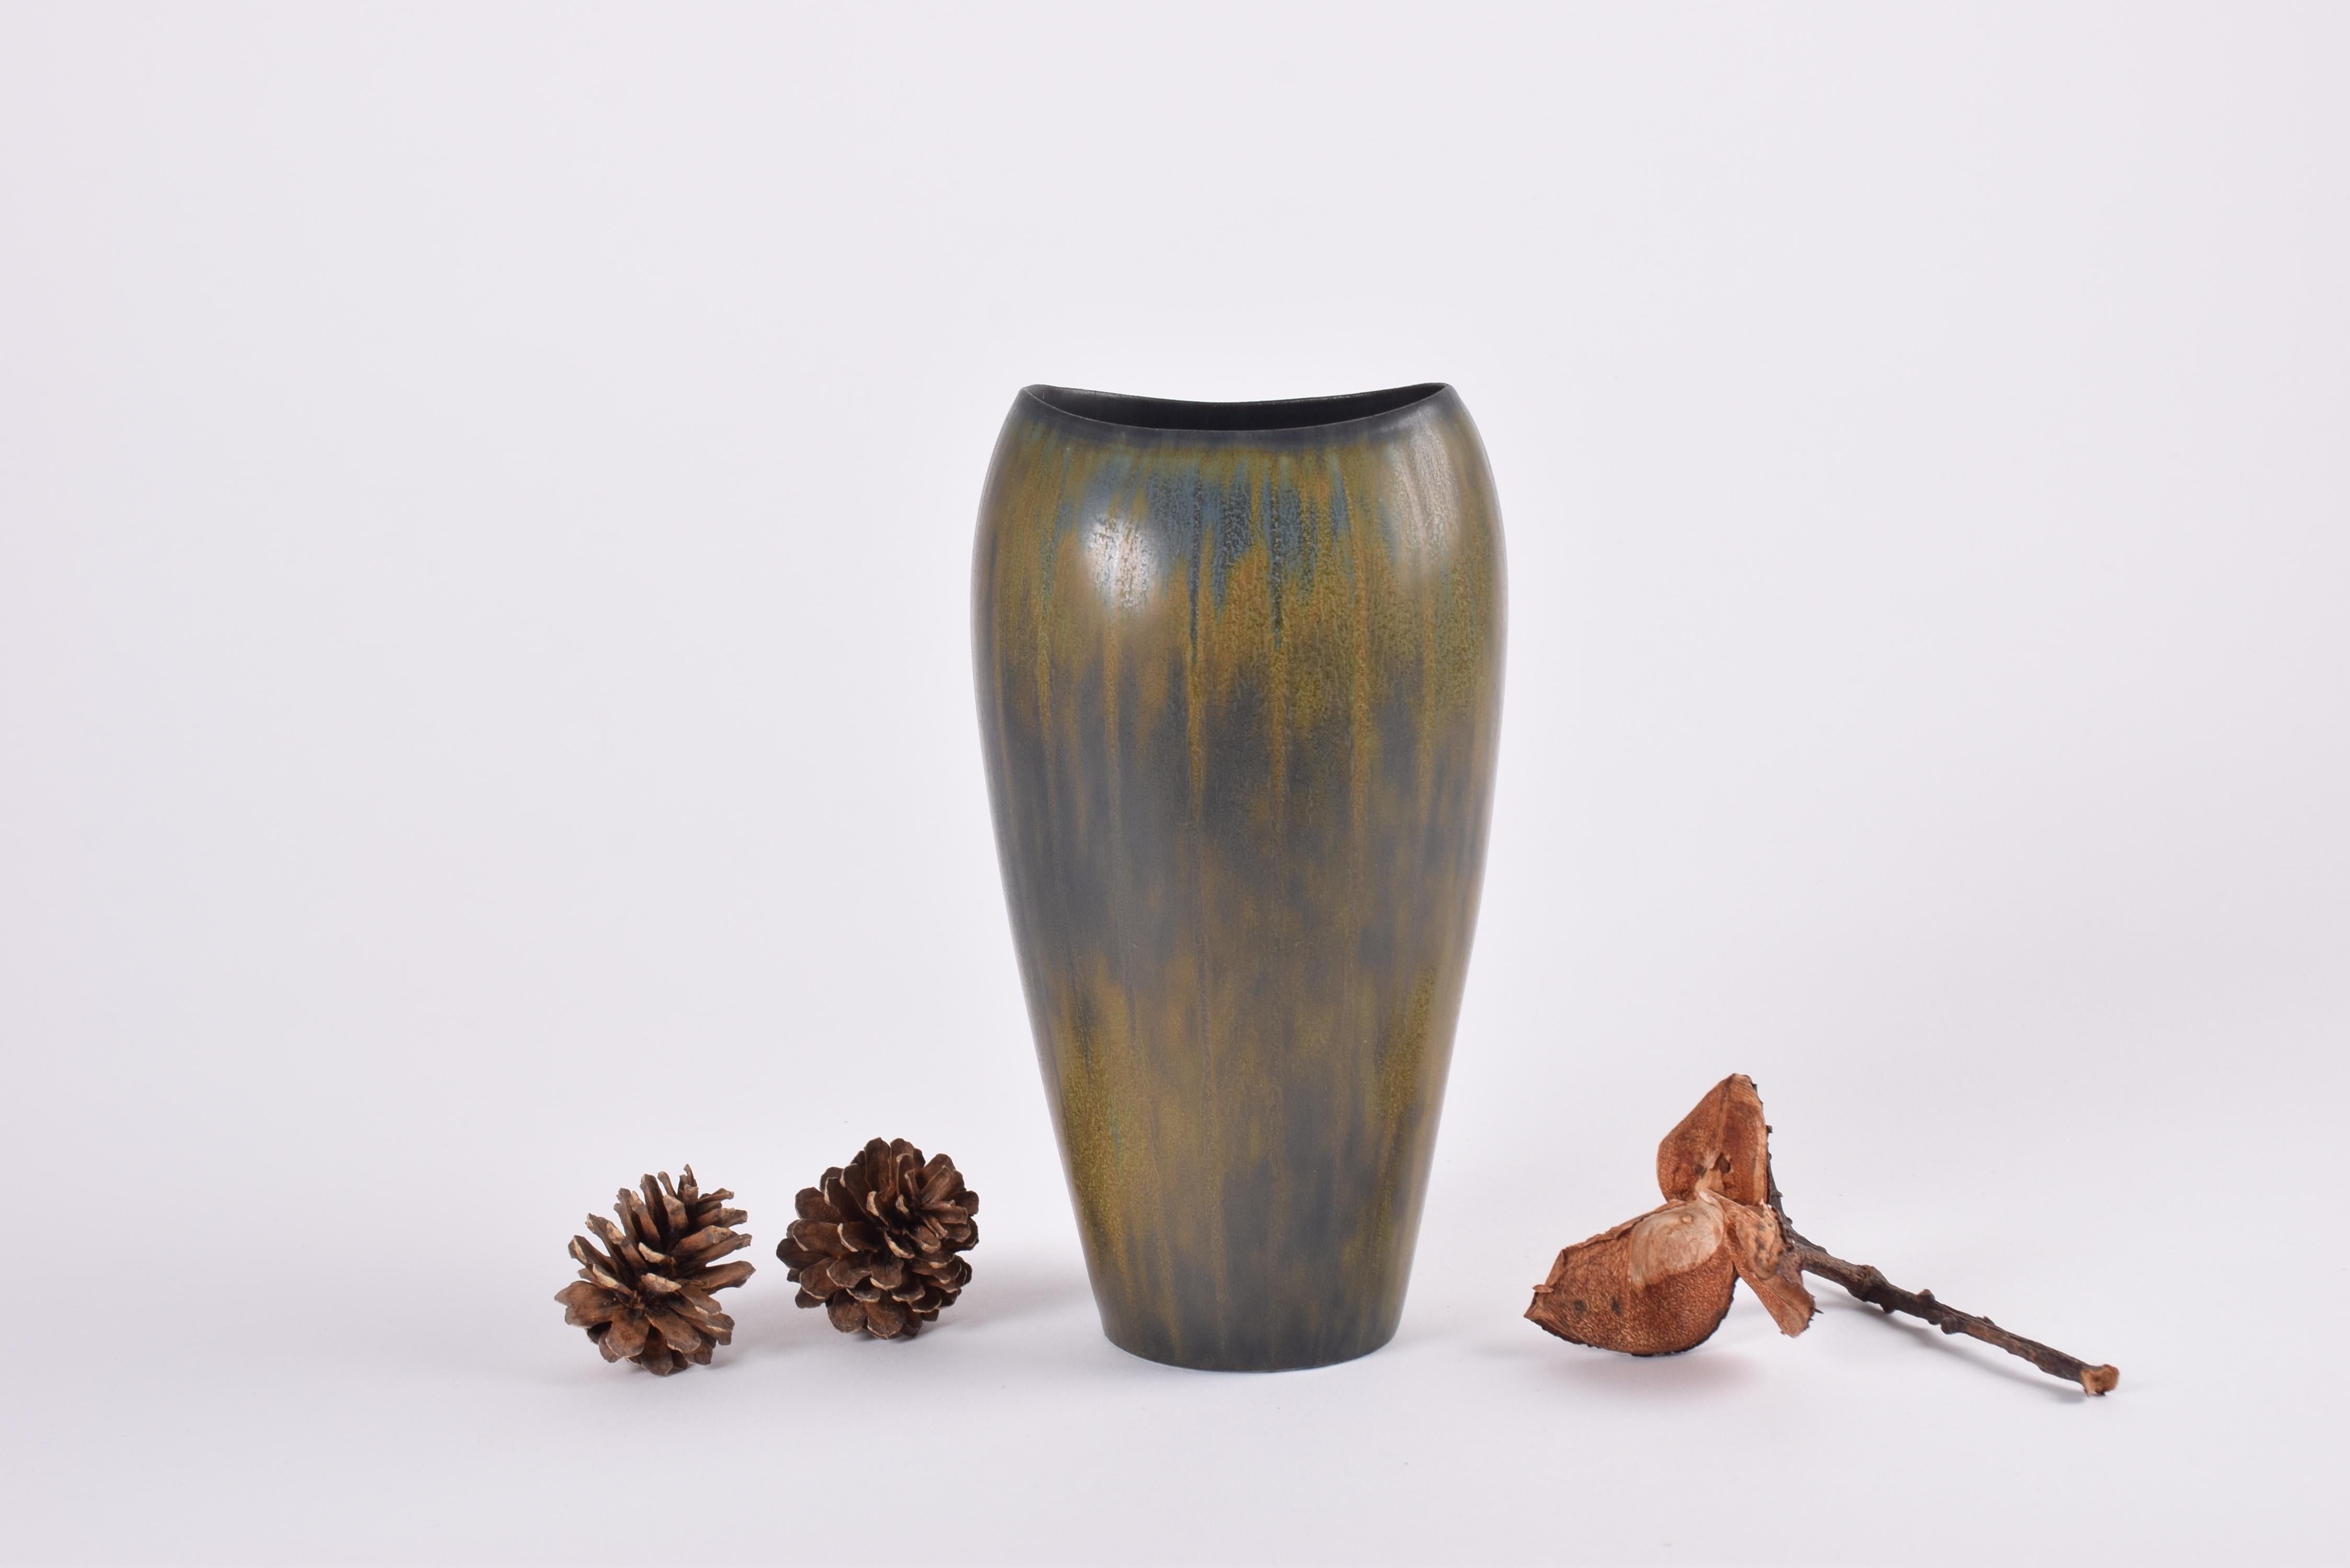 Ce vase de Gunnar Nylund pour Rörstrand Sweden présente une glaçure absolument magnifique.
Il s'agit du modèle AXZ, conçu et fabriqué dans les années 1950 à 1960.

Le vase a une forme élégante avec des lèvres très fines vers le haut. Les couleurs de